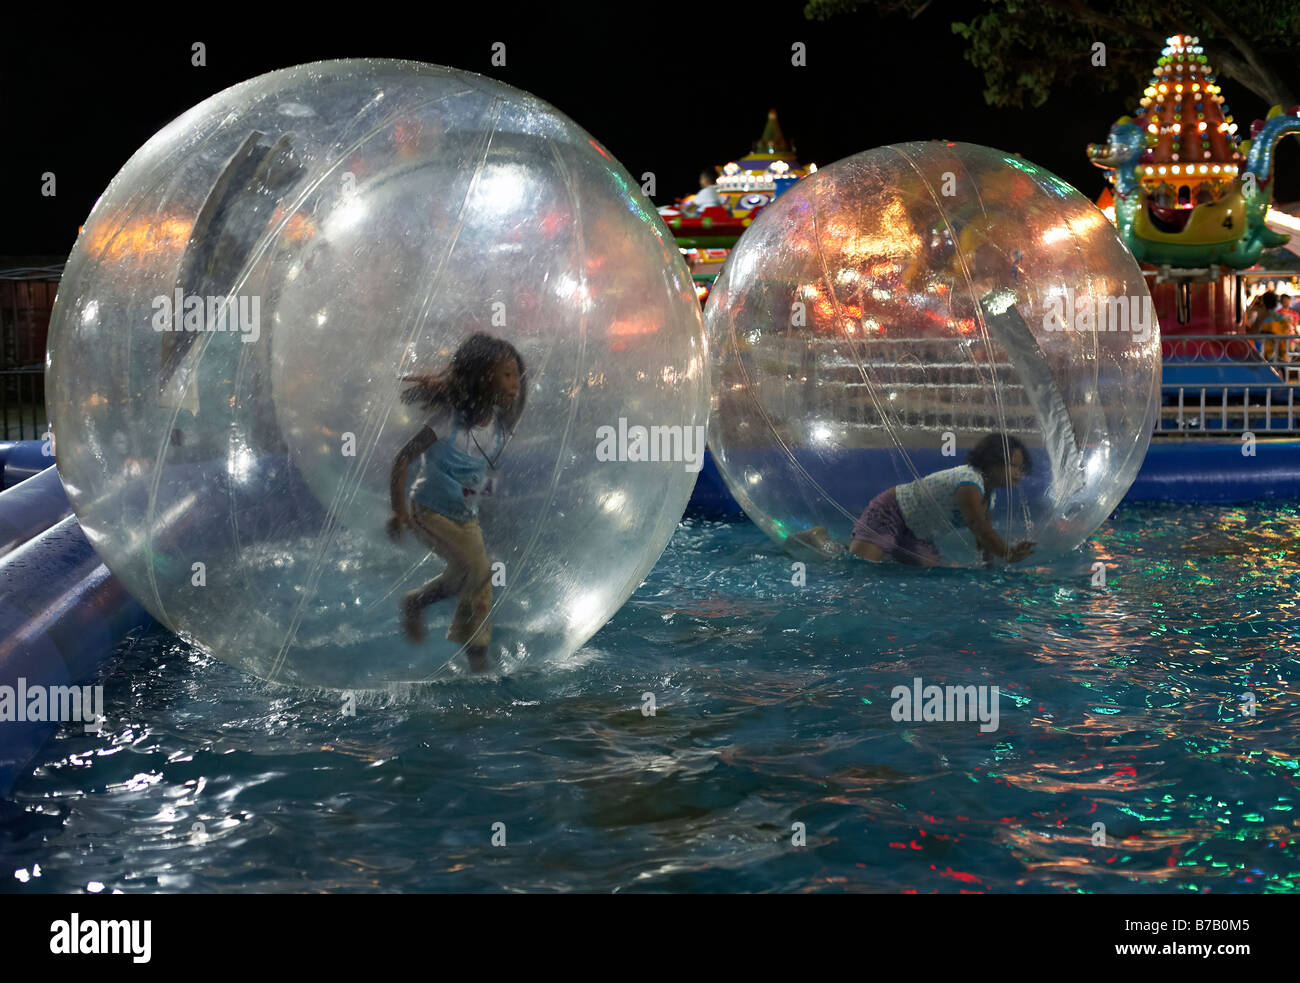 Ballon d'eau pour enfants. Marche sur l'eau. Enfant courant sur l'eau dans un ballon flottant. Parc d'expositions. Banque D'Images